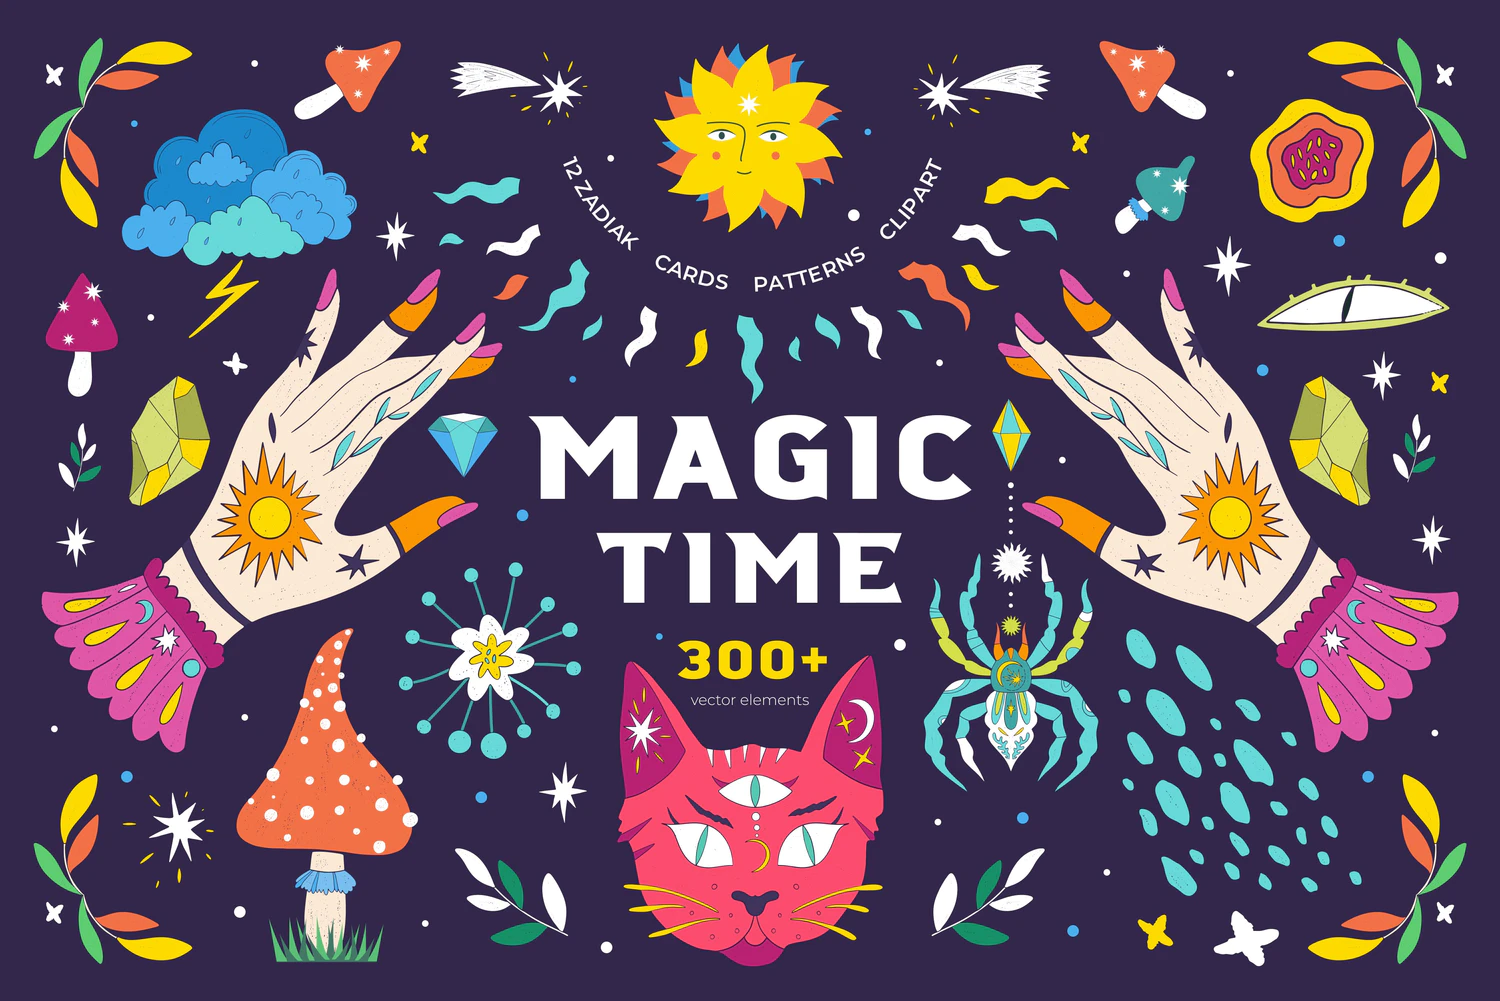 5424星座花卉魔法主题的手绘风格彩色矢量插画素材-Magic Time